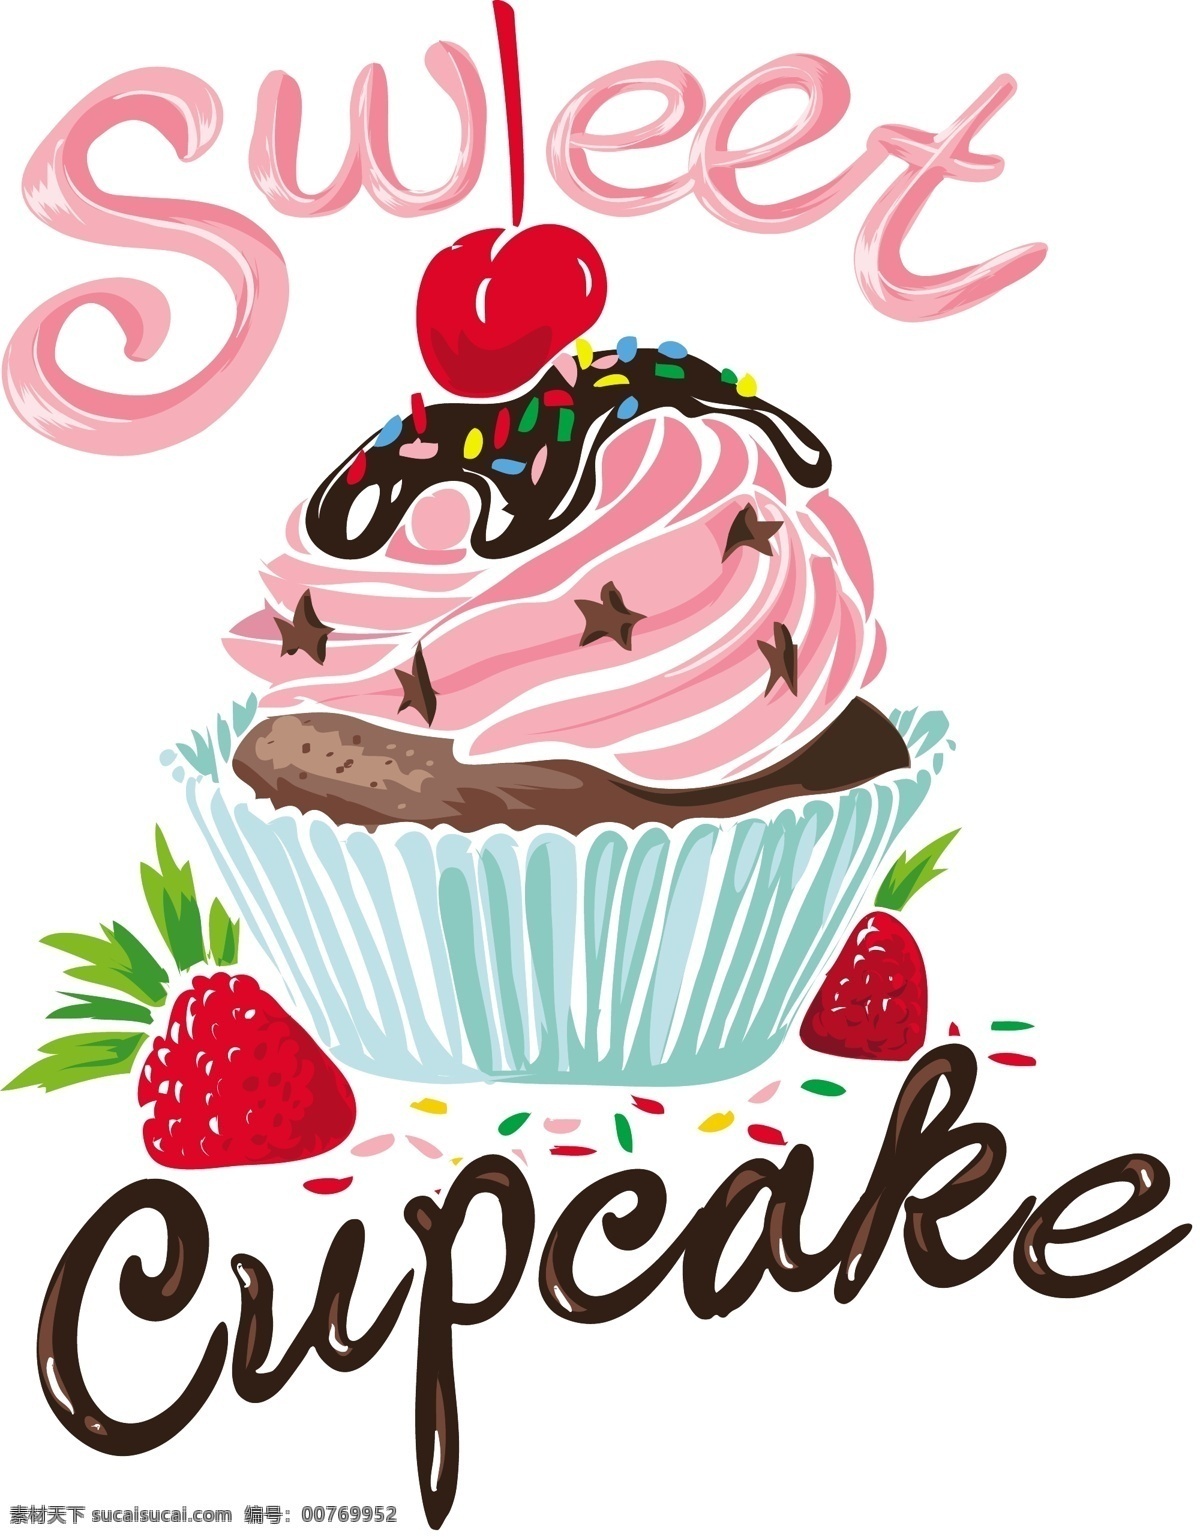 草莓蛋糕图片 蛋糕 草莓 甜品 美食 食物 童装矢量图案 生活百科 餐饮美食